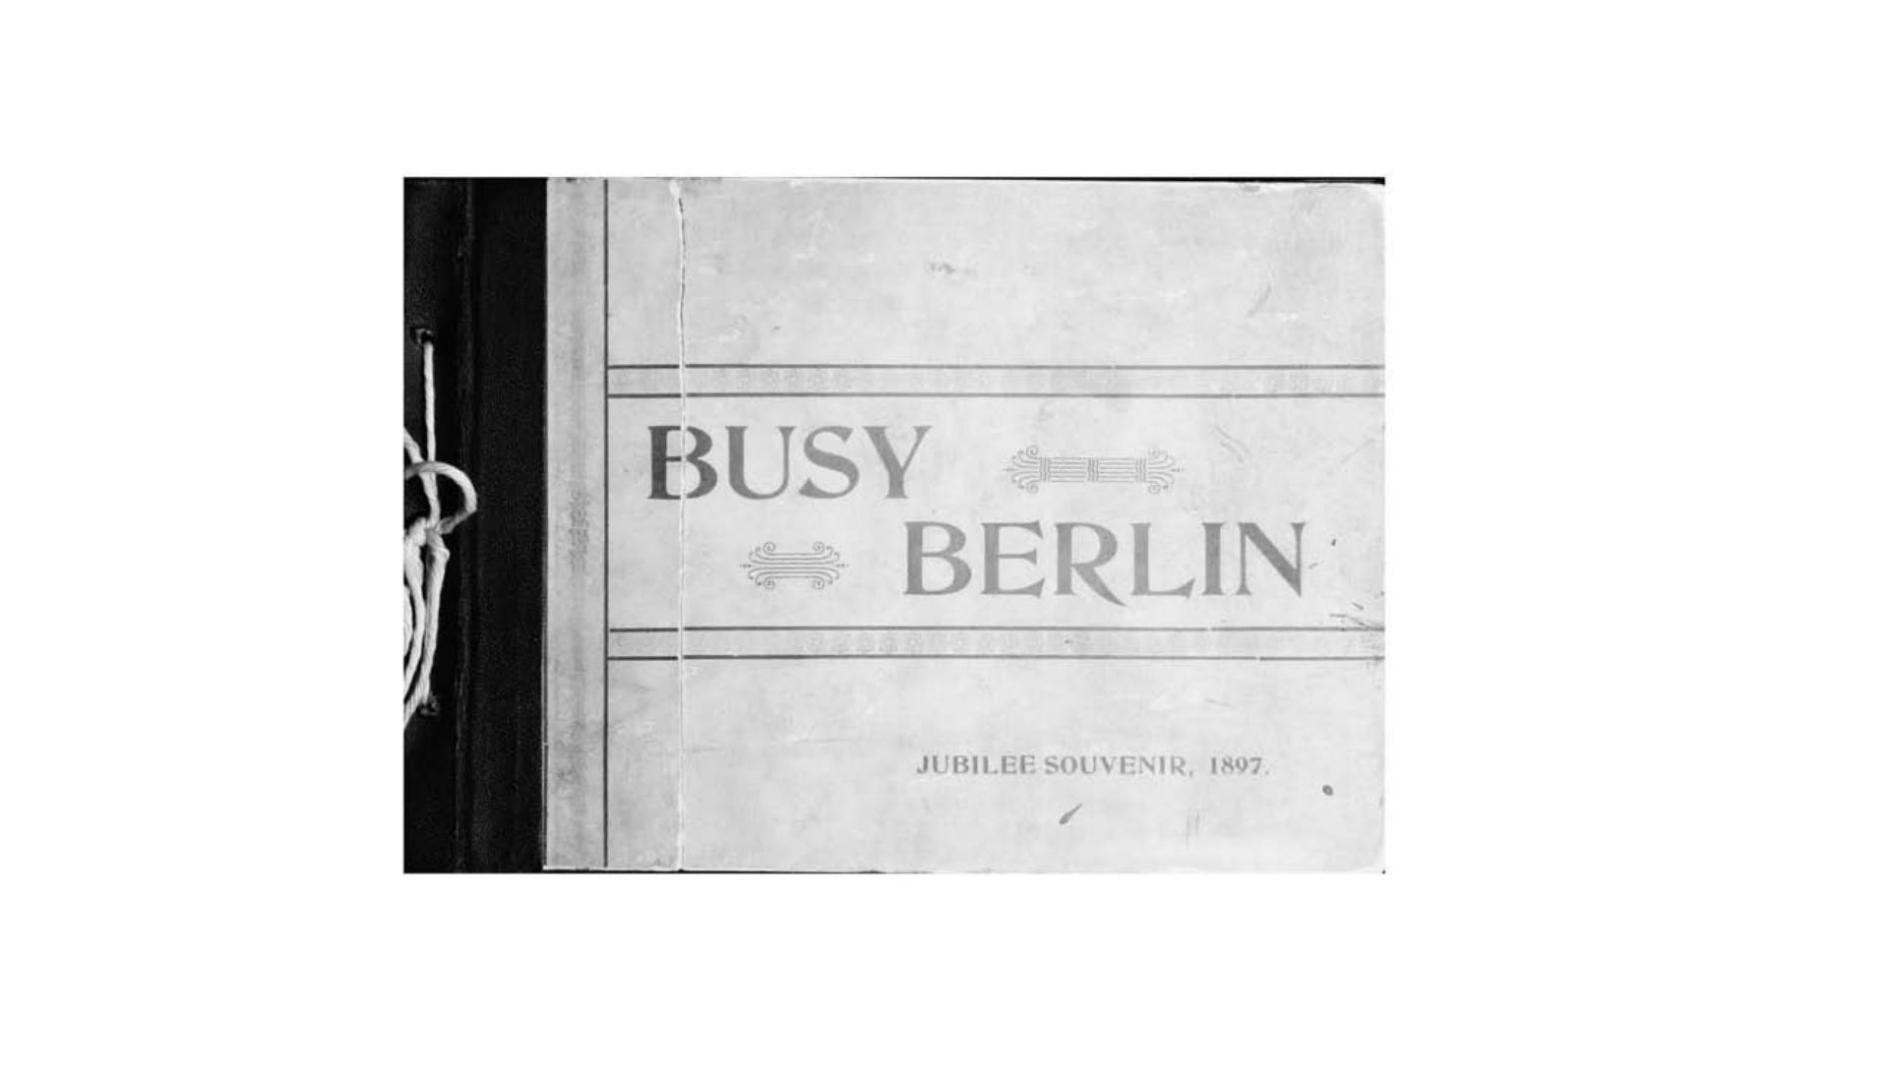 Busy Berlin : jubilee souvenir, 1897